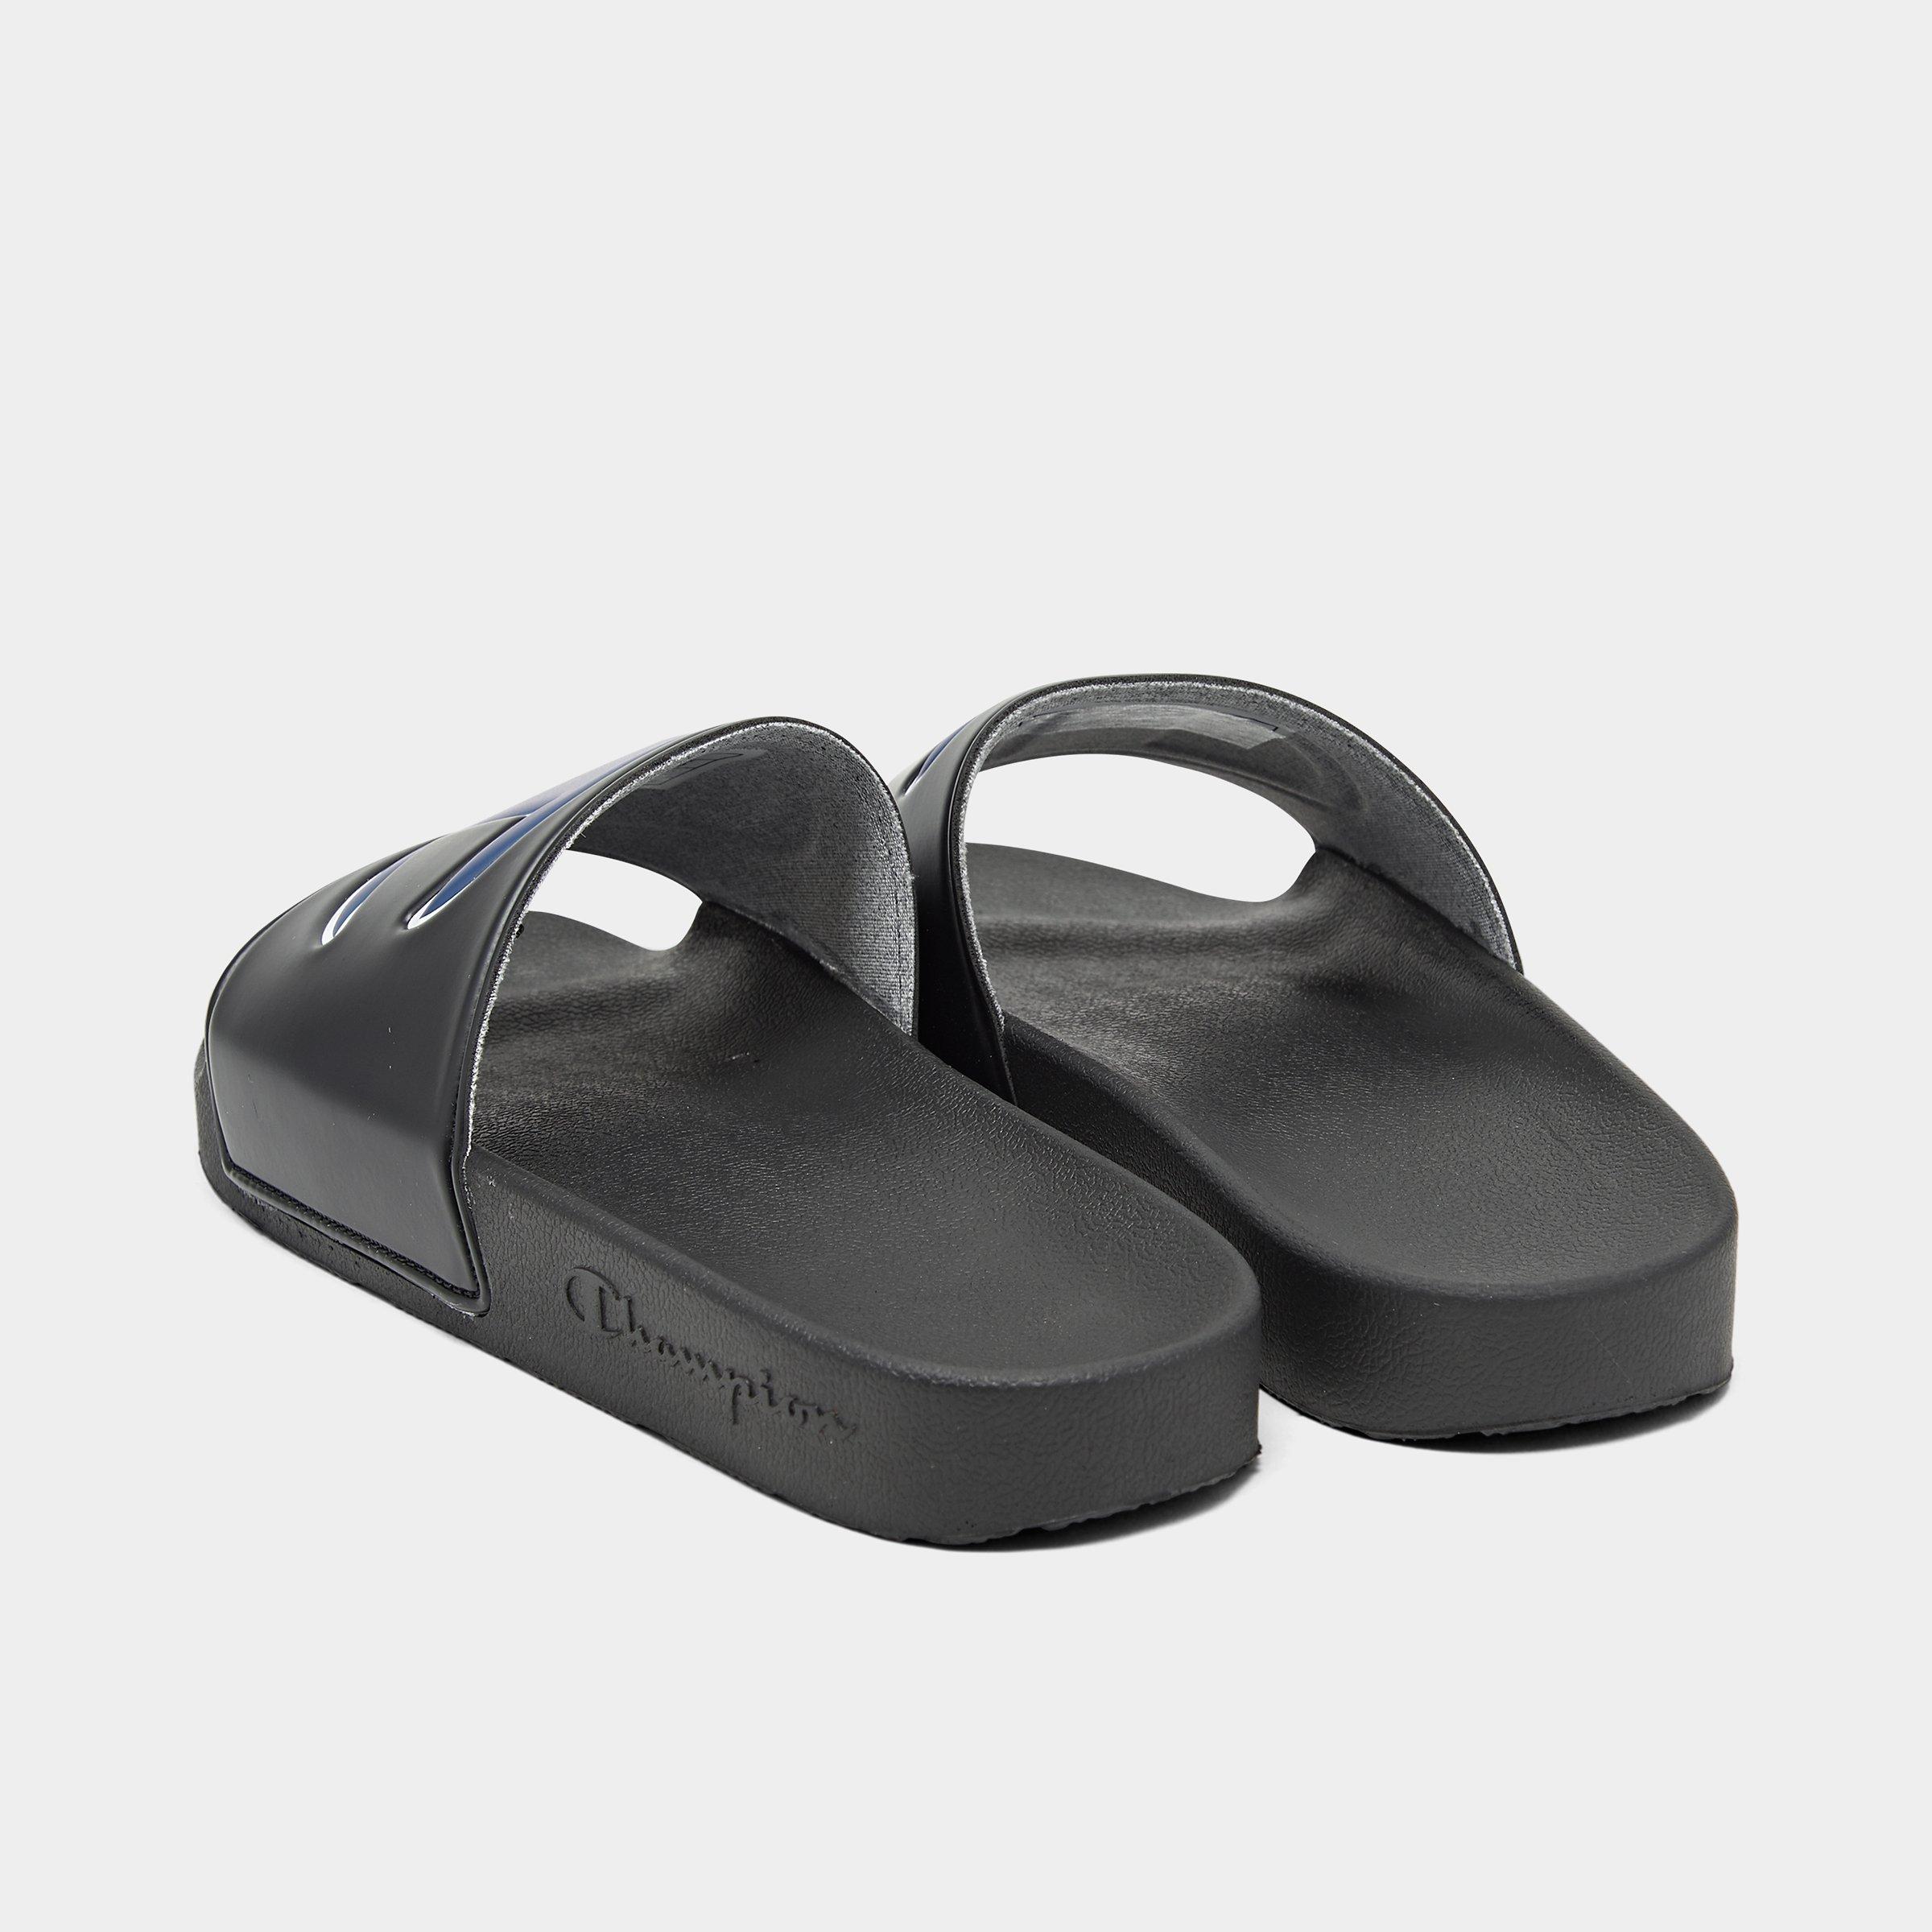 champion ipo black & white slide sandals